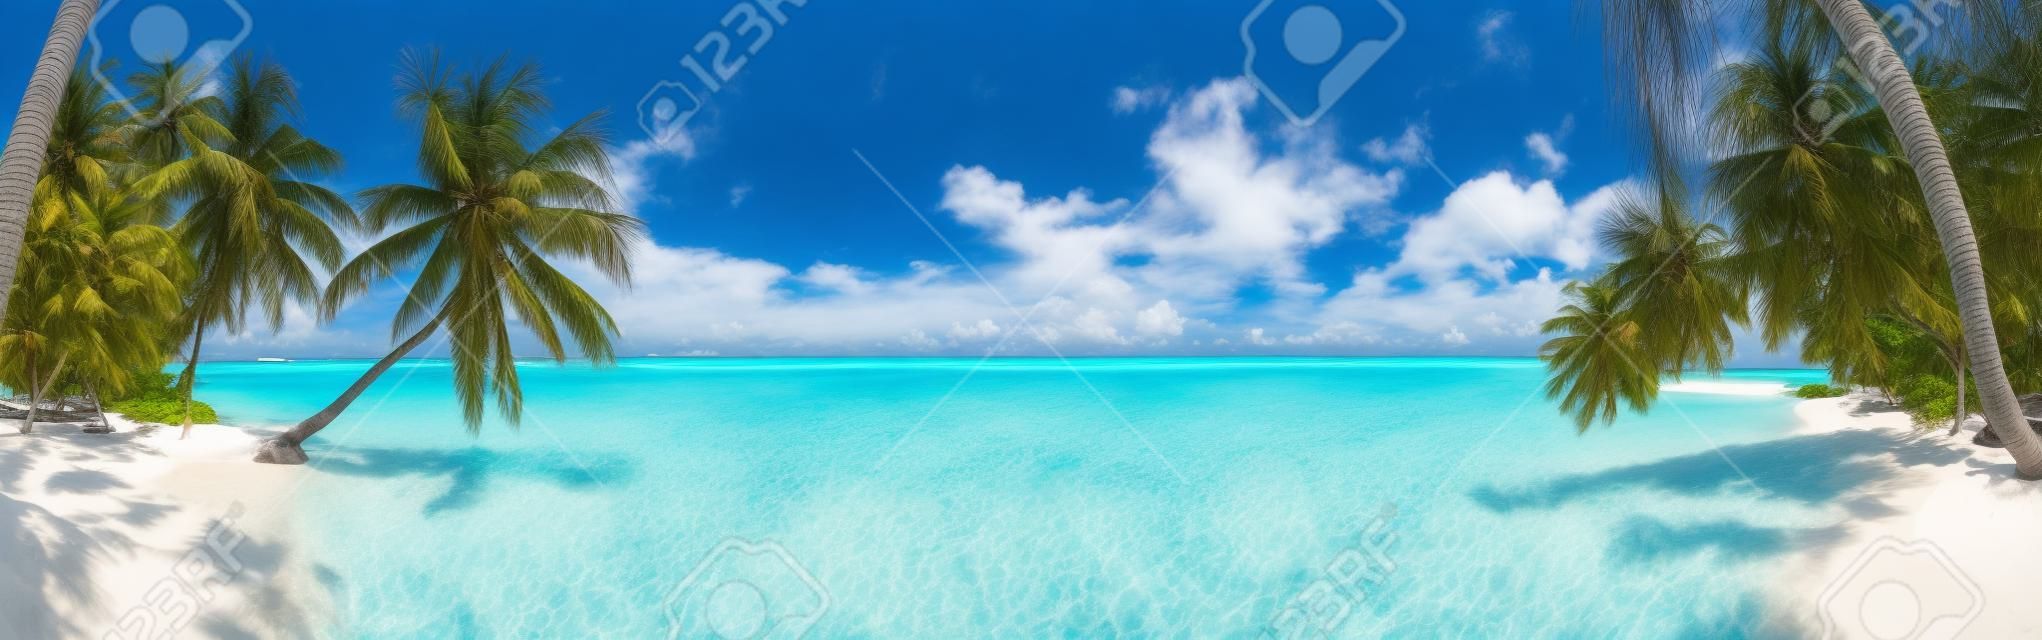 푸른 하늘, 야자수와 청록색 물 몰디브에서 해변 파노라마